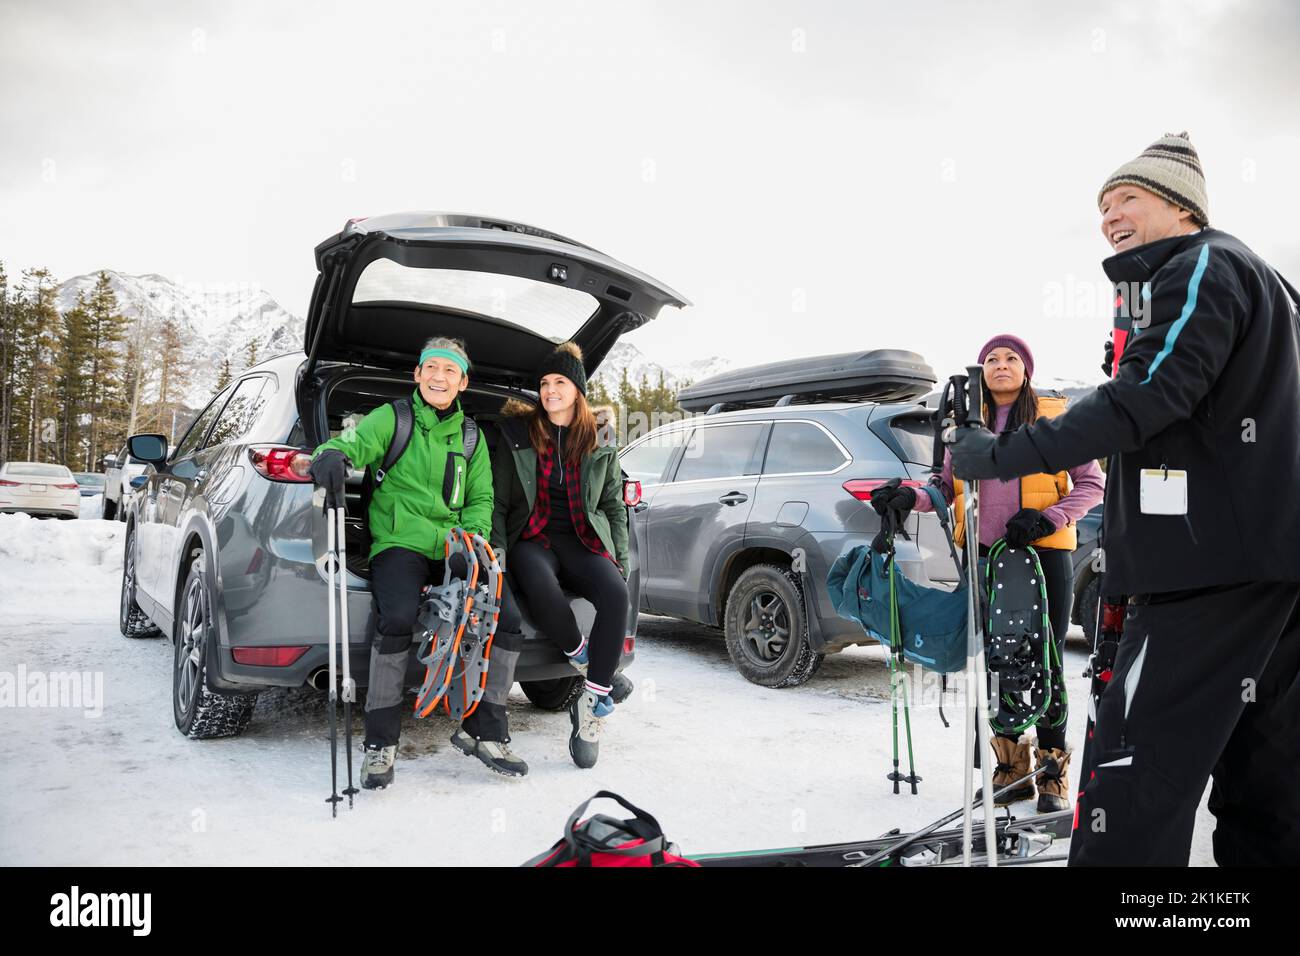 Parejas con equipo de esquí en coche exterior en el aparcamiento del complejo de esquí nevado Foto de stock